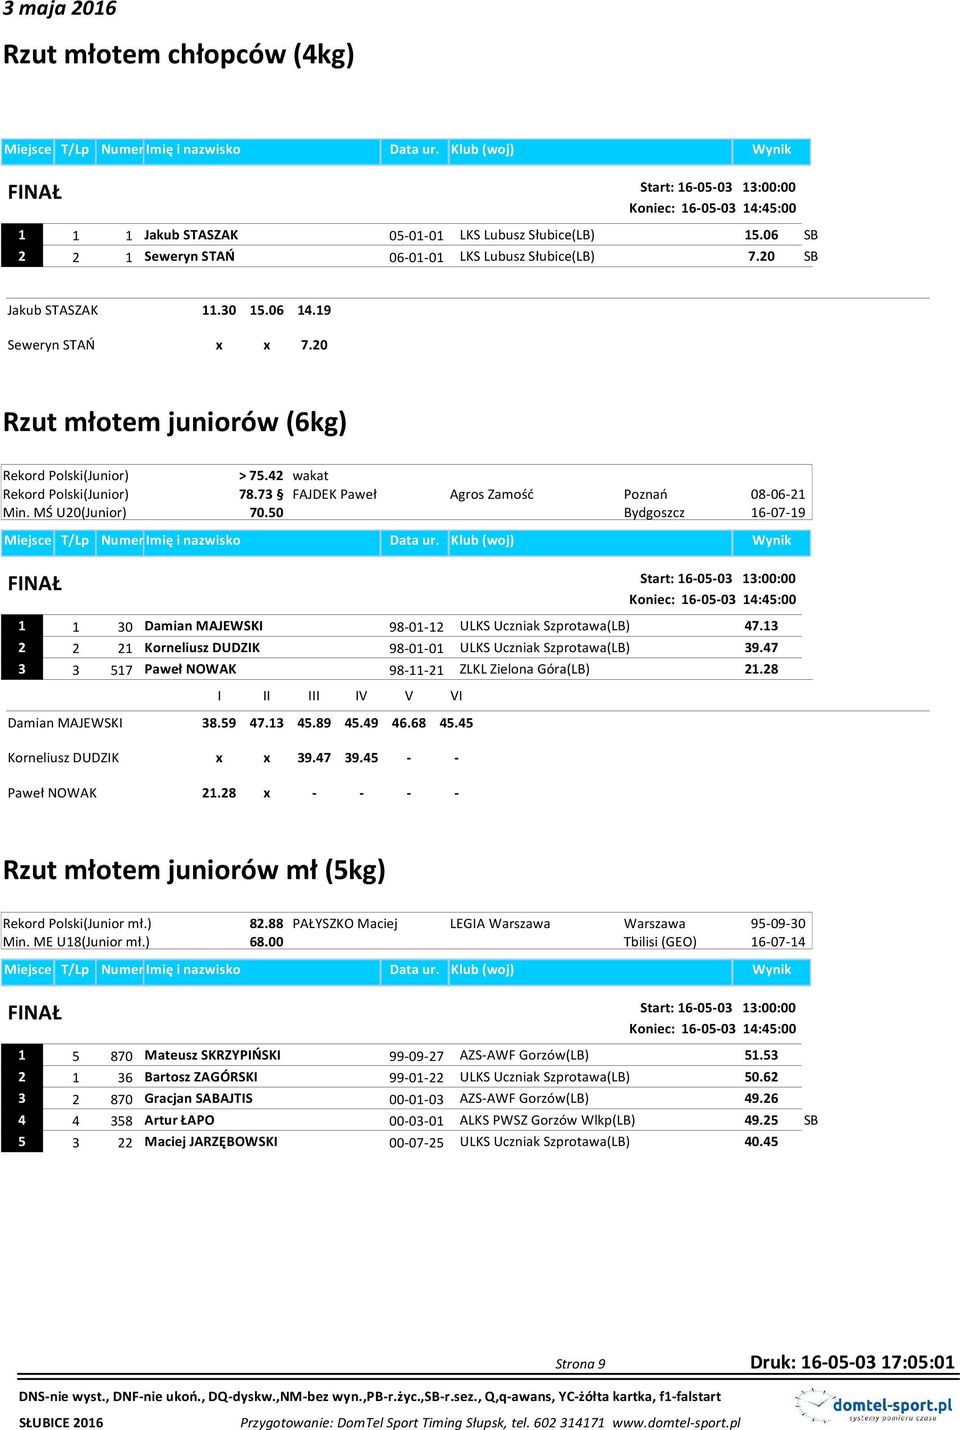 MŚ U20(Junior) 70.50 Start: 16-05-03 13:00:00 Koniec: 16-05-03 14:45:00 1 1 30 Damian MAJEWSKI 98-01-12 ULKS Uczniak Szprotawa(LB) 47.